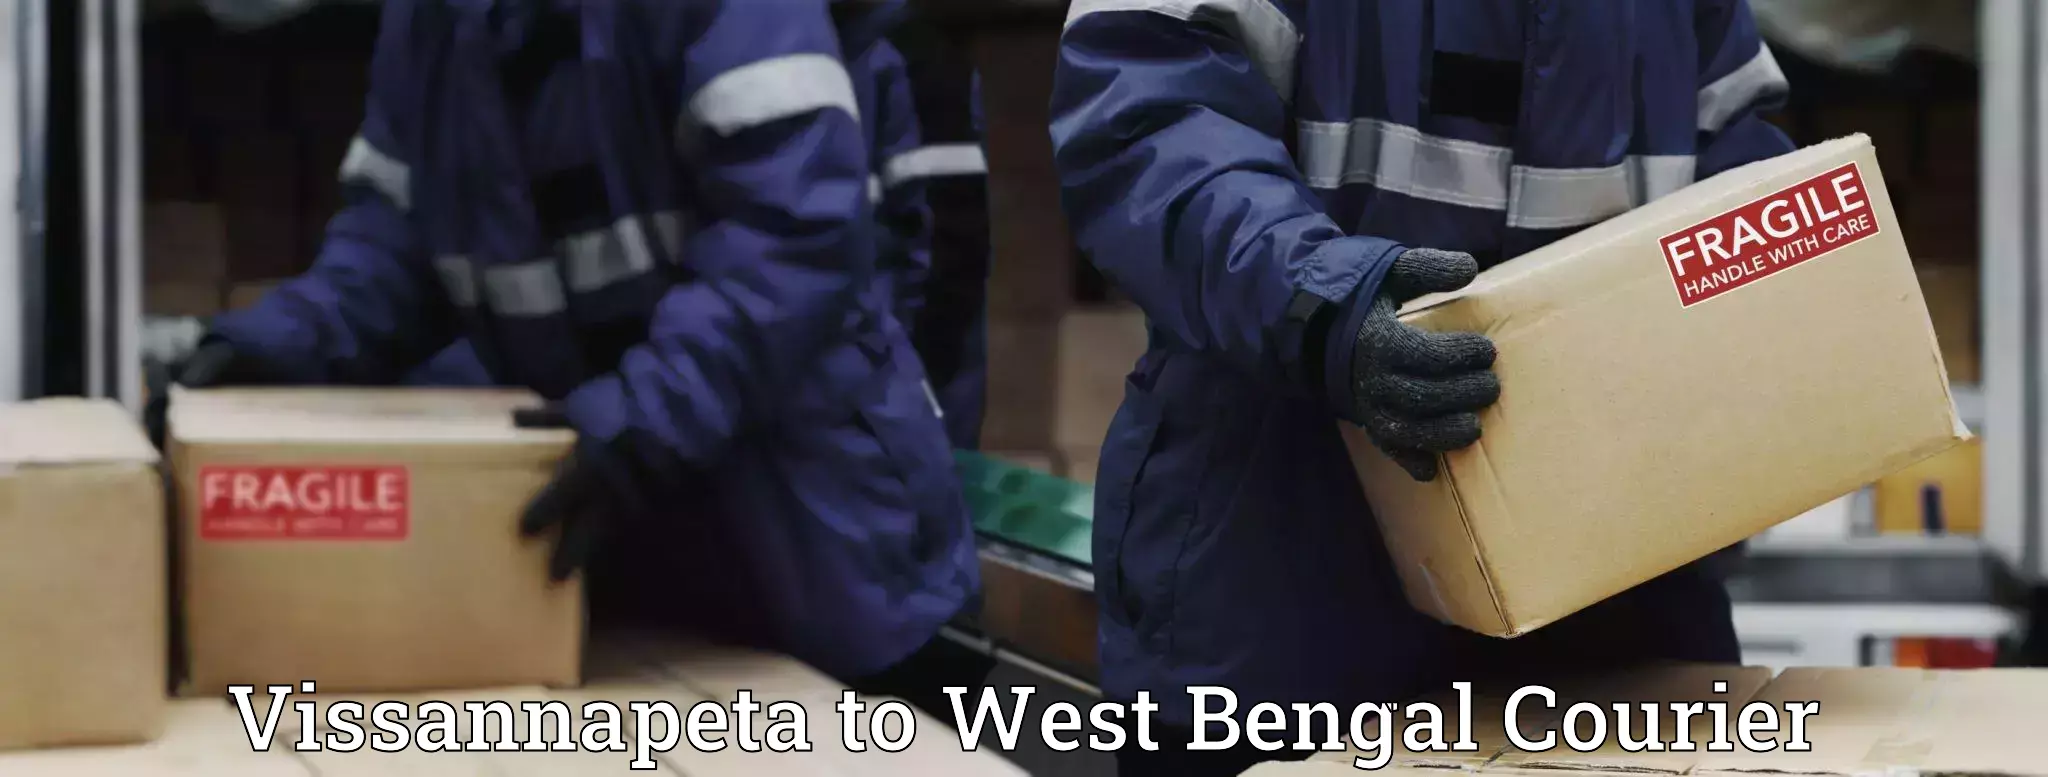 Cargo courier service Vissannapeta to West Bengal